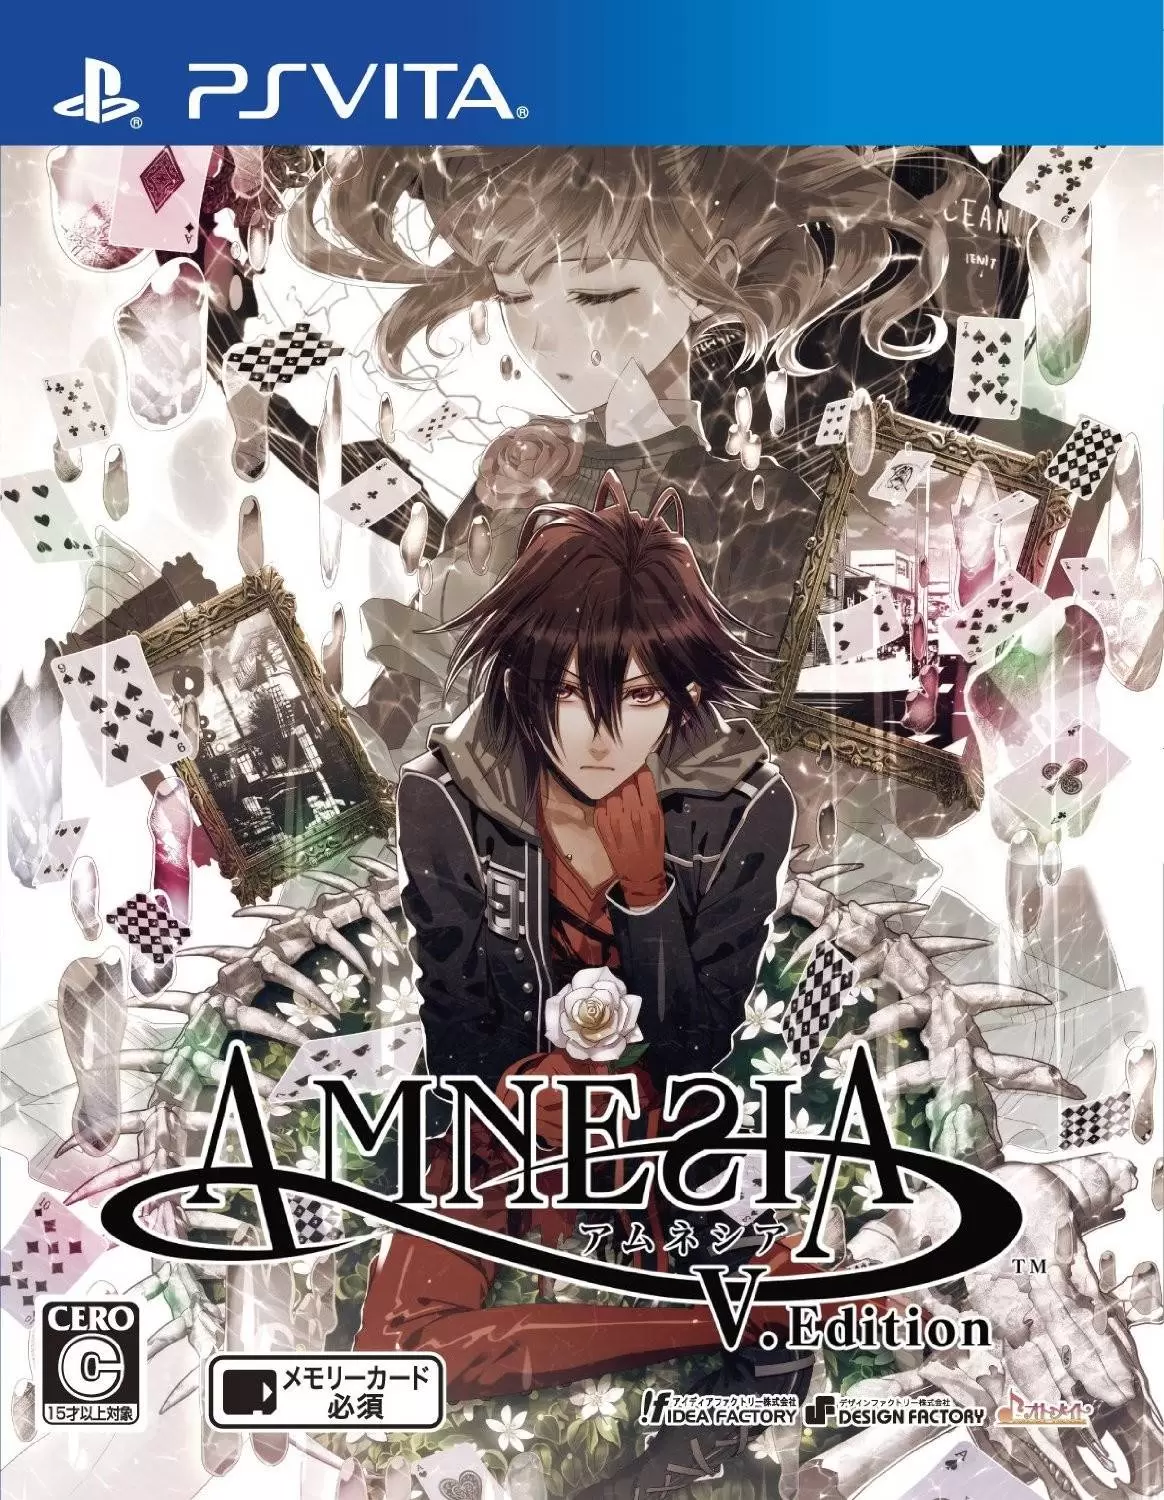 PS Vita Games - Amnesia: Memories